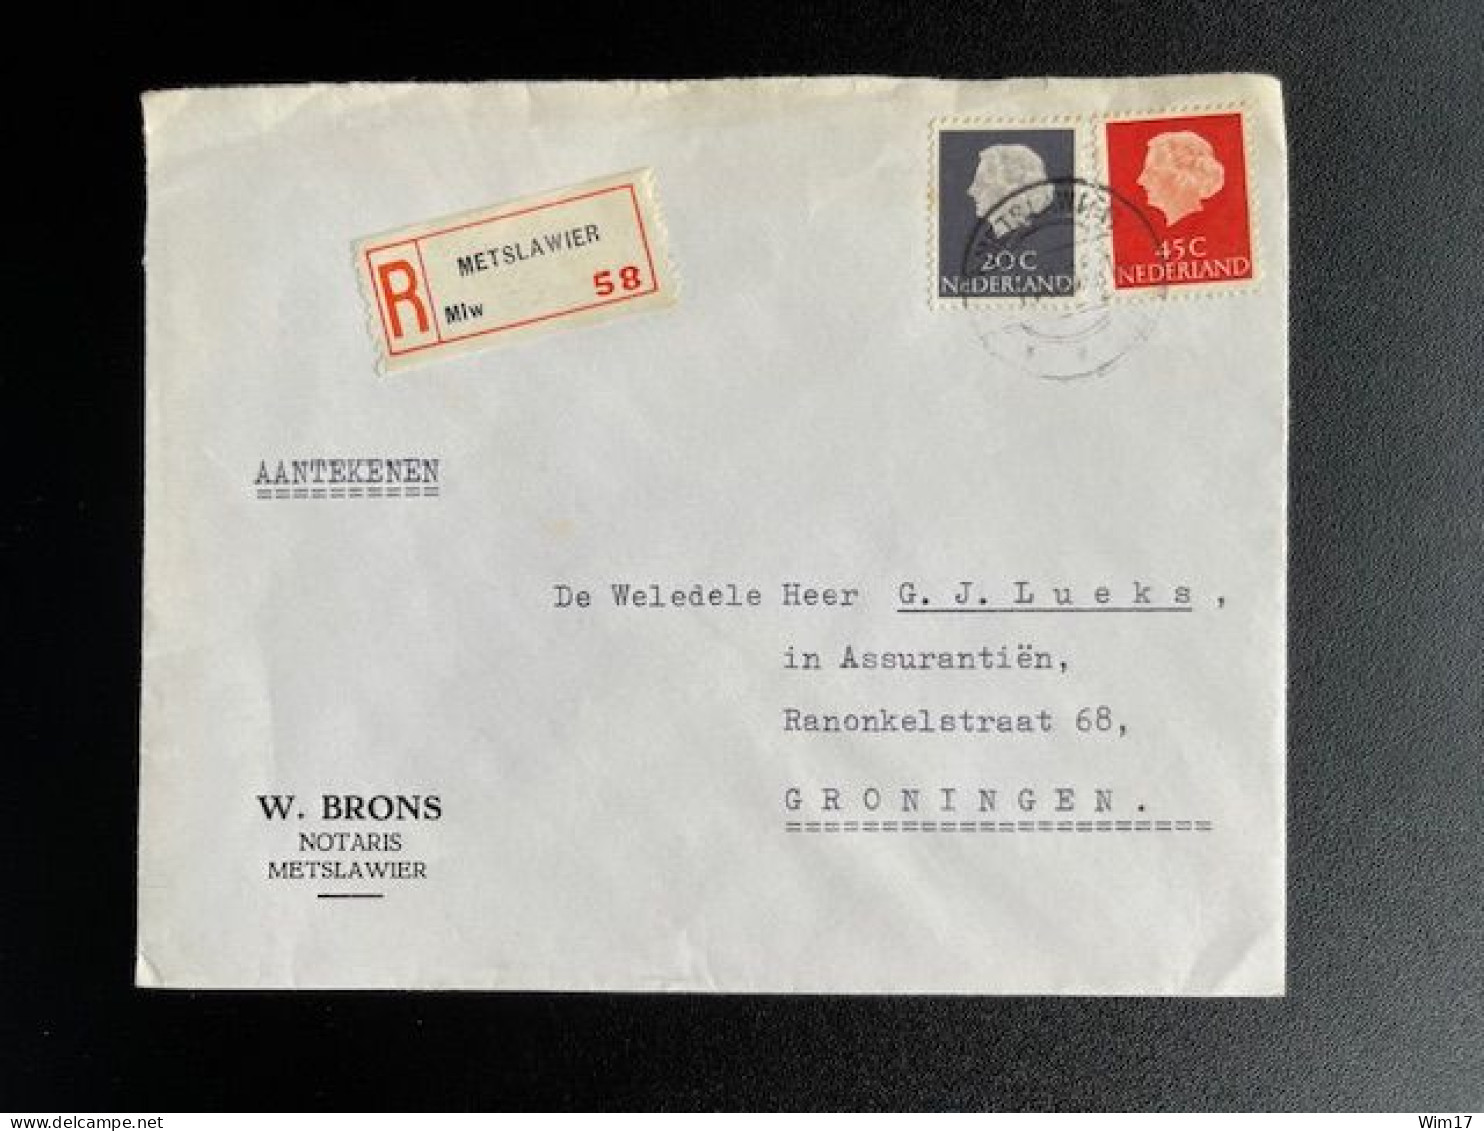 NETHERLANDS 1966 REGISTERED LETTER METSLAWIER TO GRONINGEN 01-11-1966 NEDERLAND AANGETEKEND - Covers & Documents